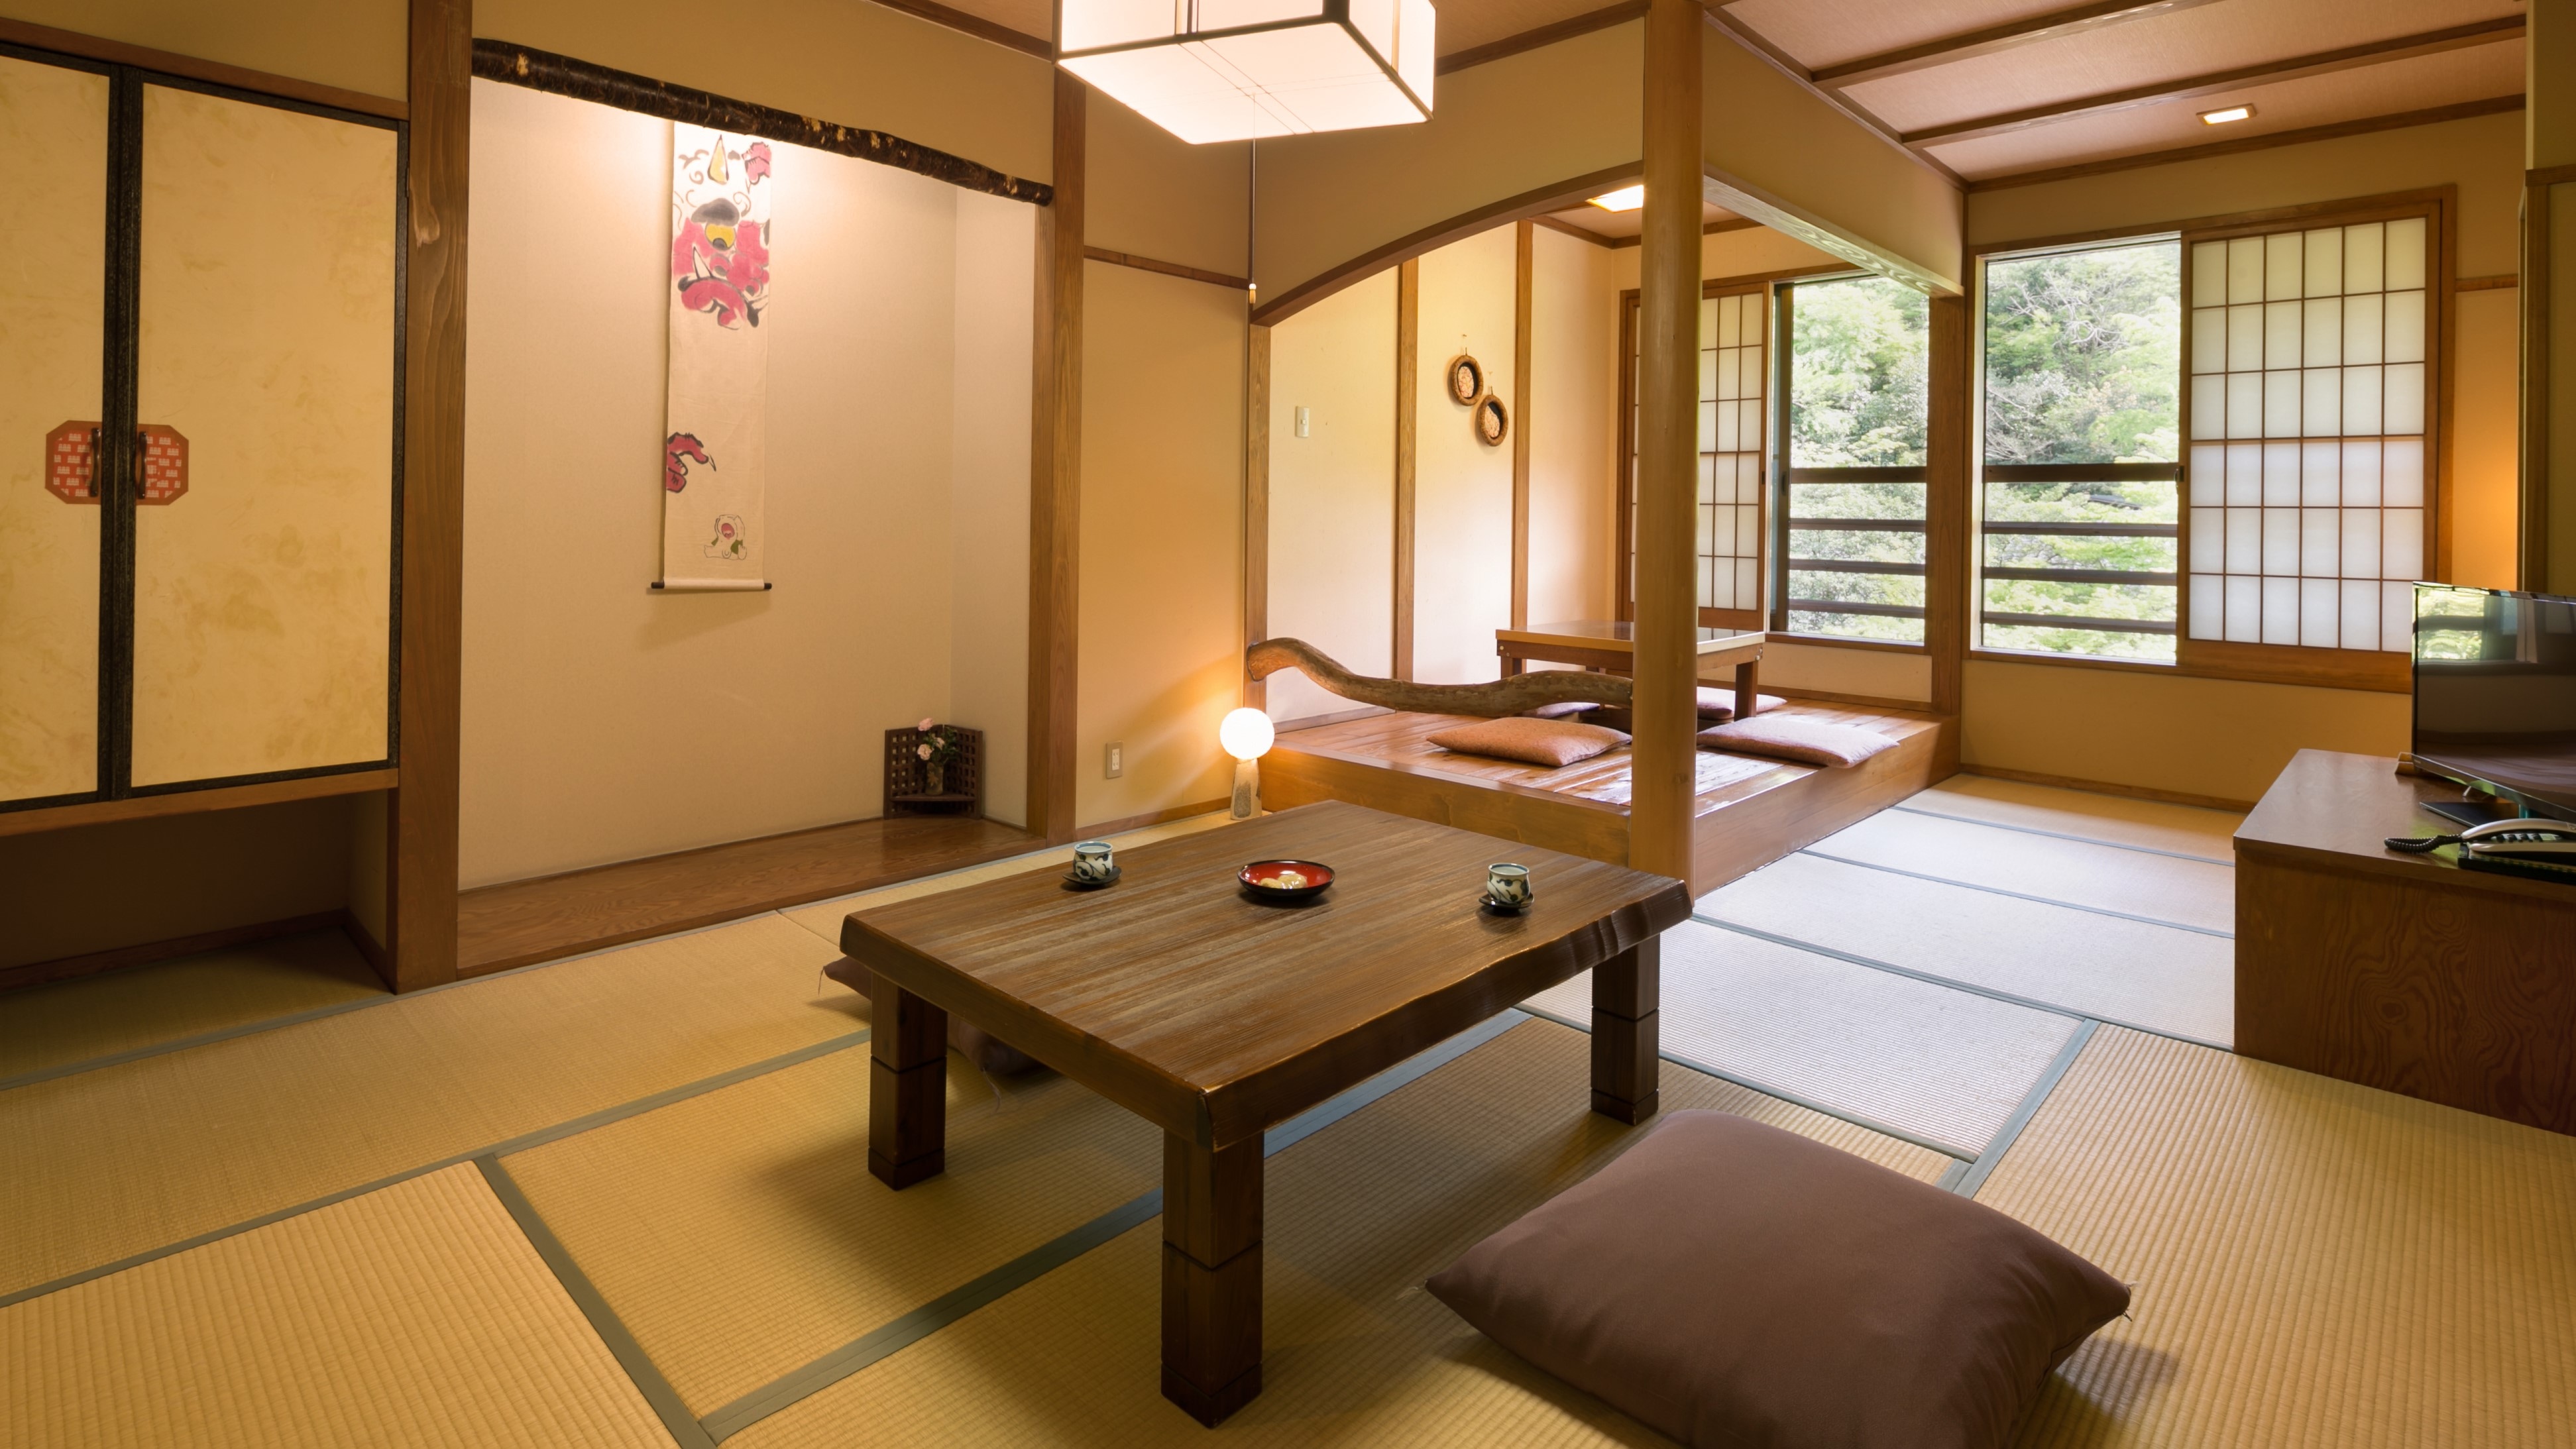 8張榻榻米的日式房間的例子。這種類型有3個房間。